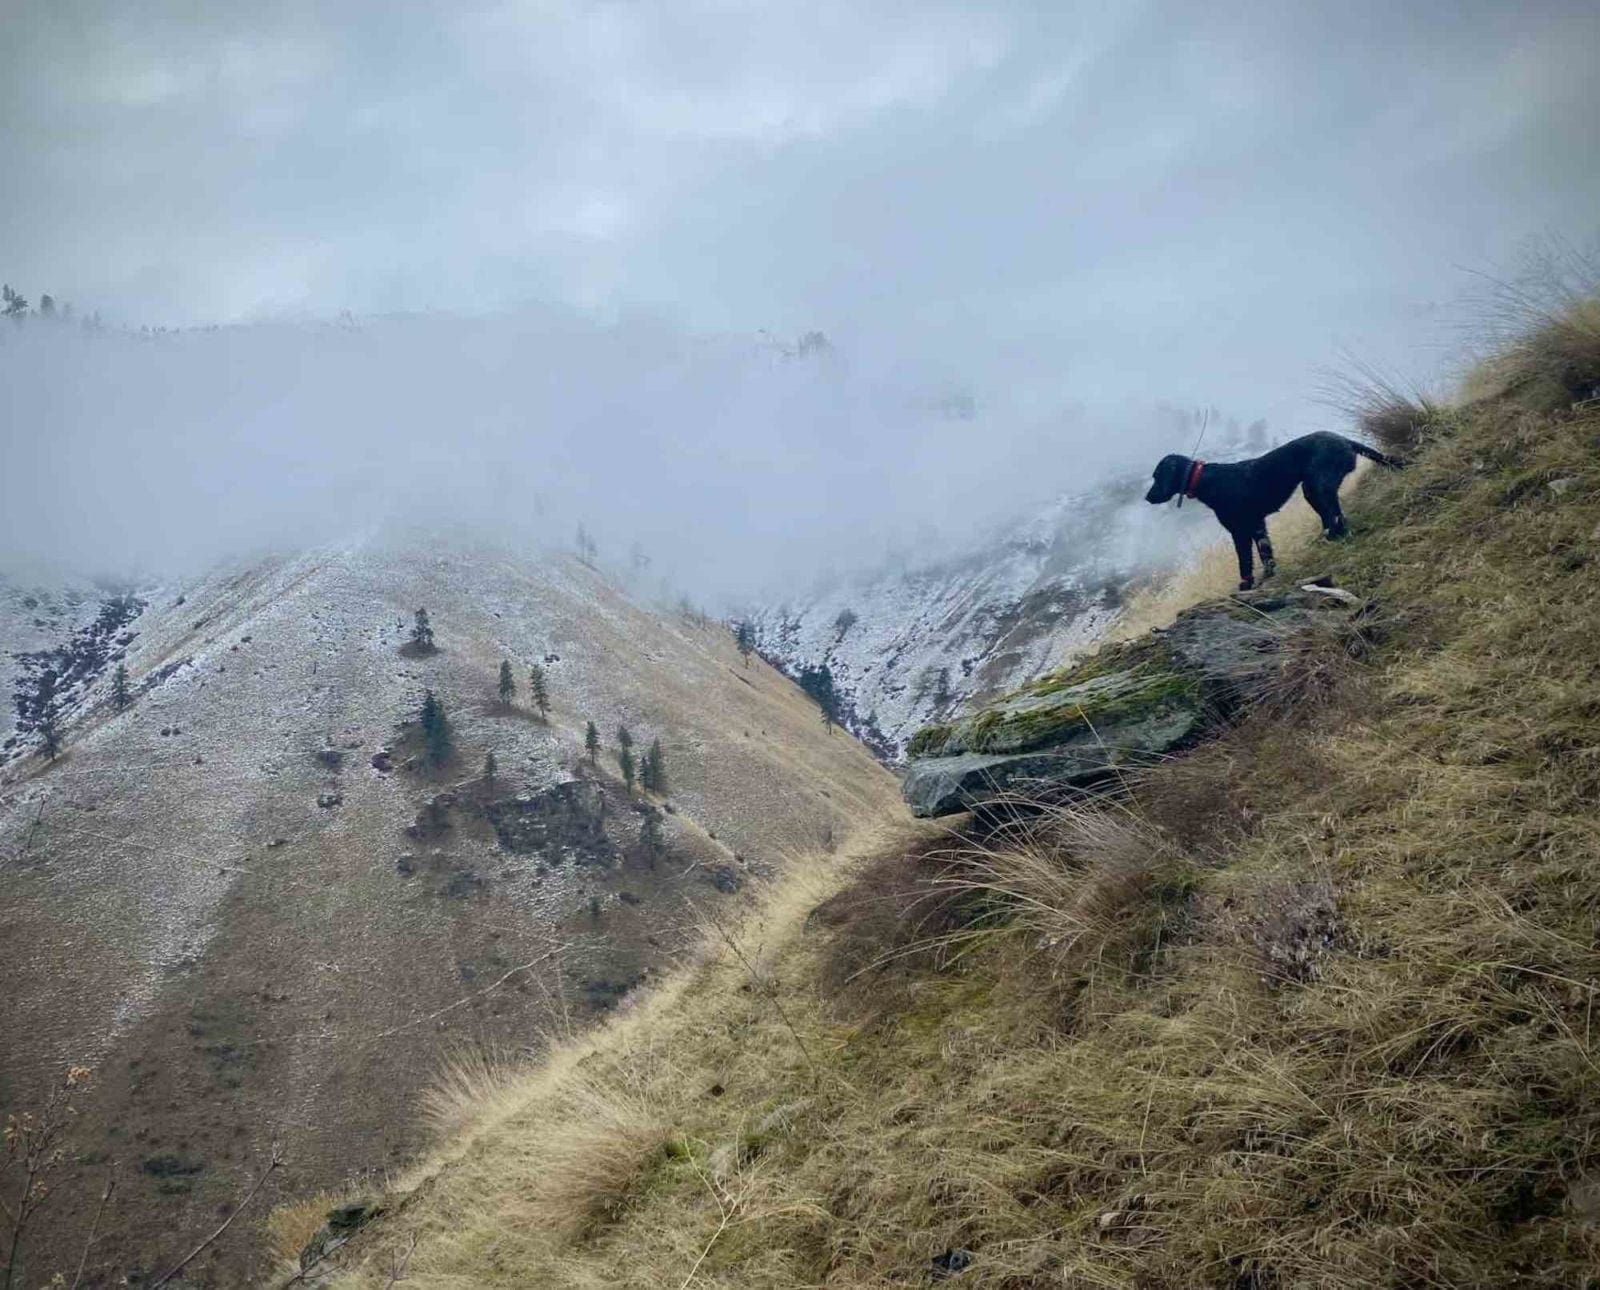 A dog hunts chukar on a steep incline